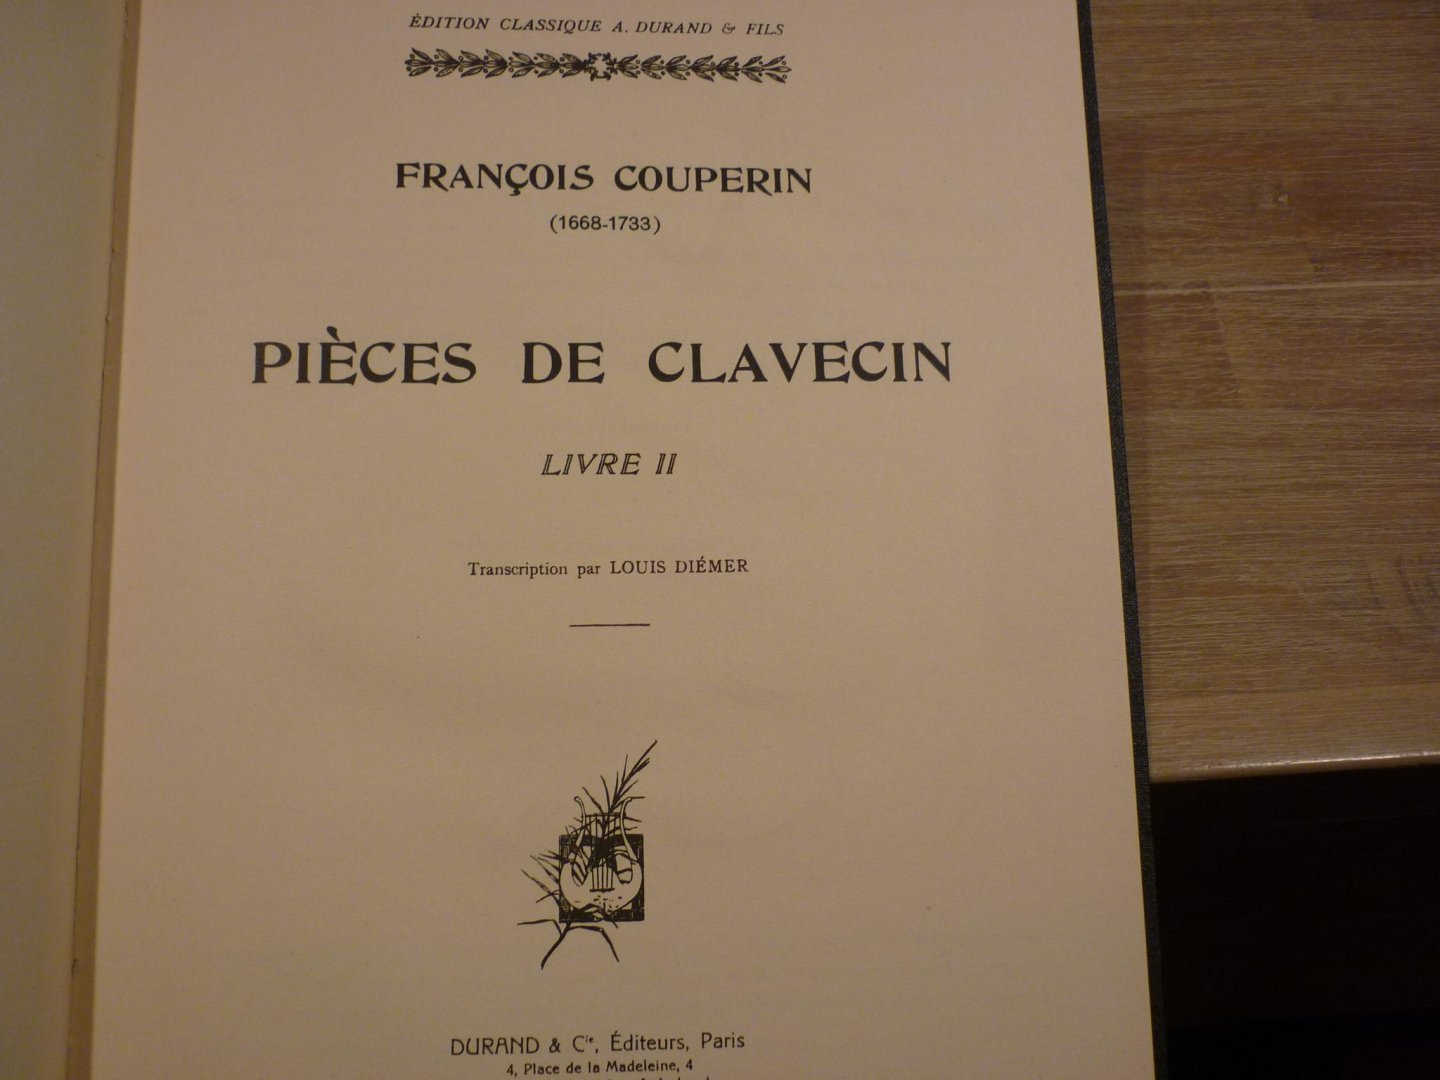 Couperin; François (1668–1733) - Pieces De Clavecin - Livre II; voor Klavecimbel (transcription par Louis Diémer)